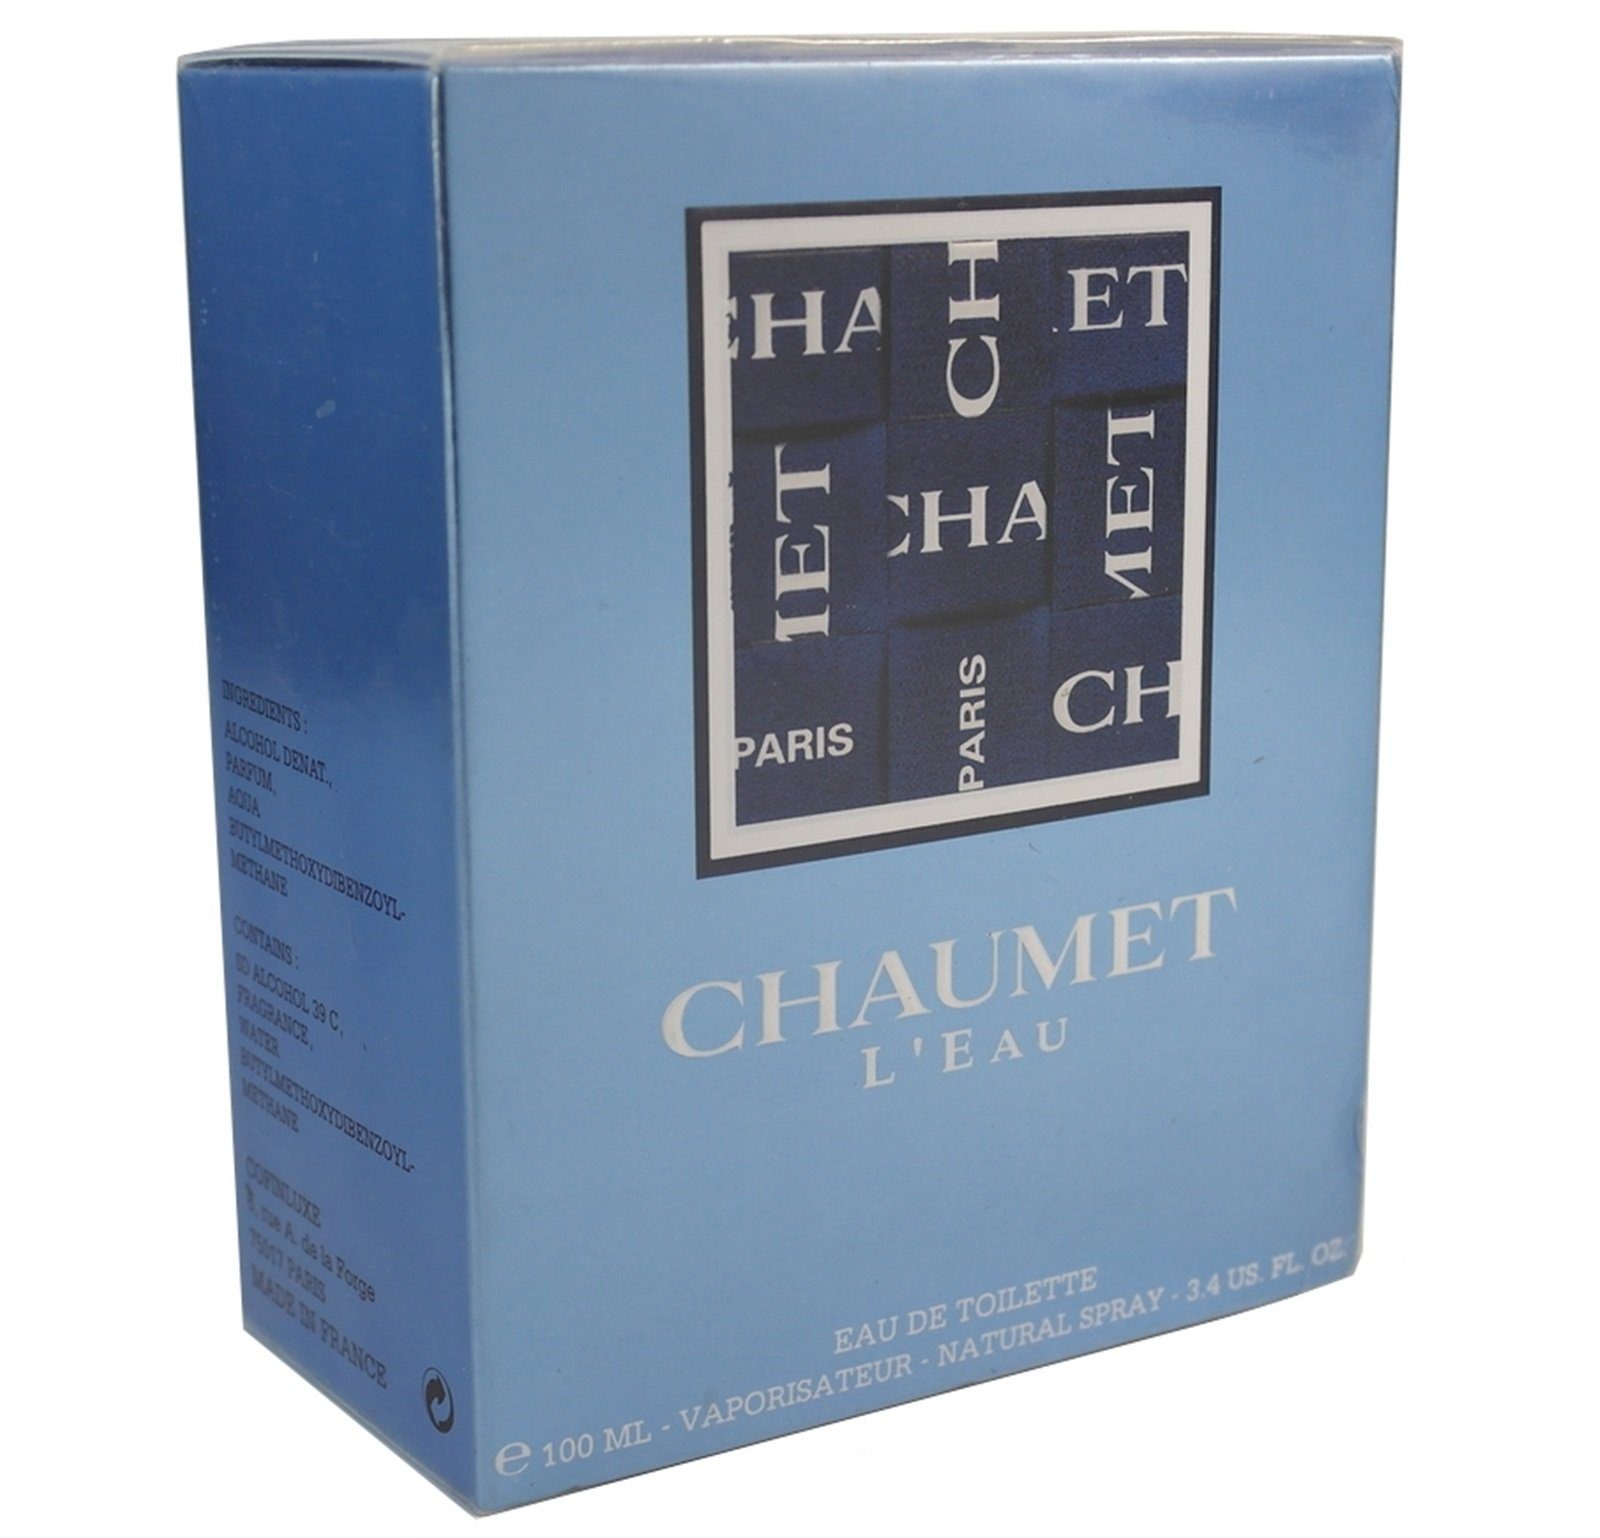 Chaumet Eau de Toilette Chaumet Classic Femme L'Eau de Toilette Spray 100 ml